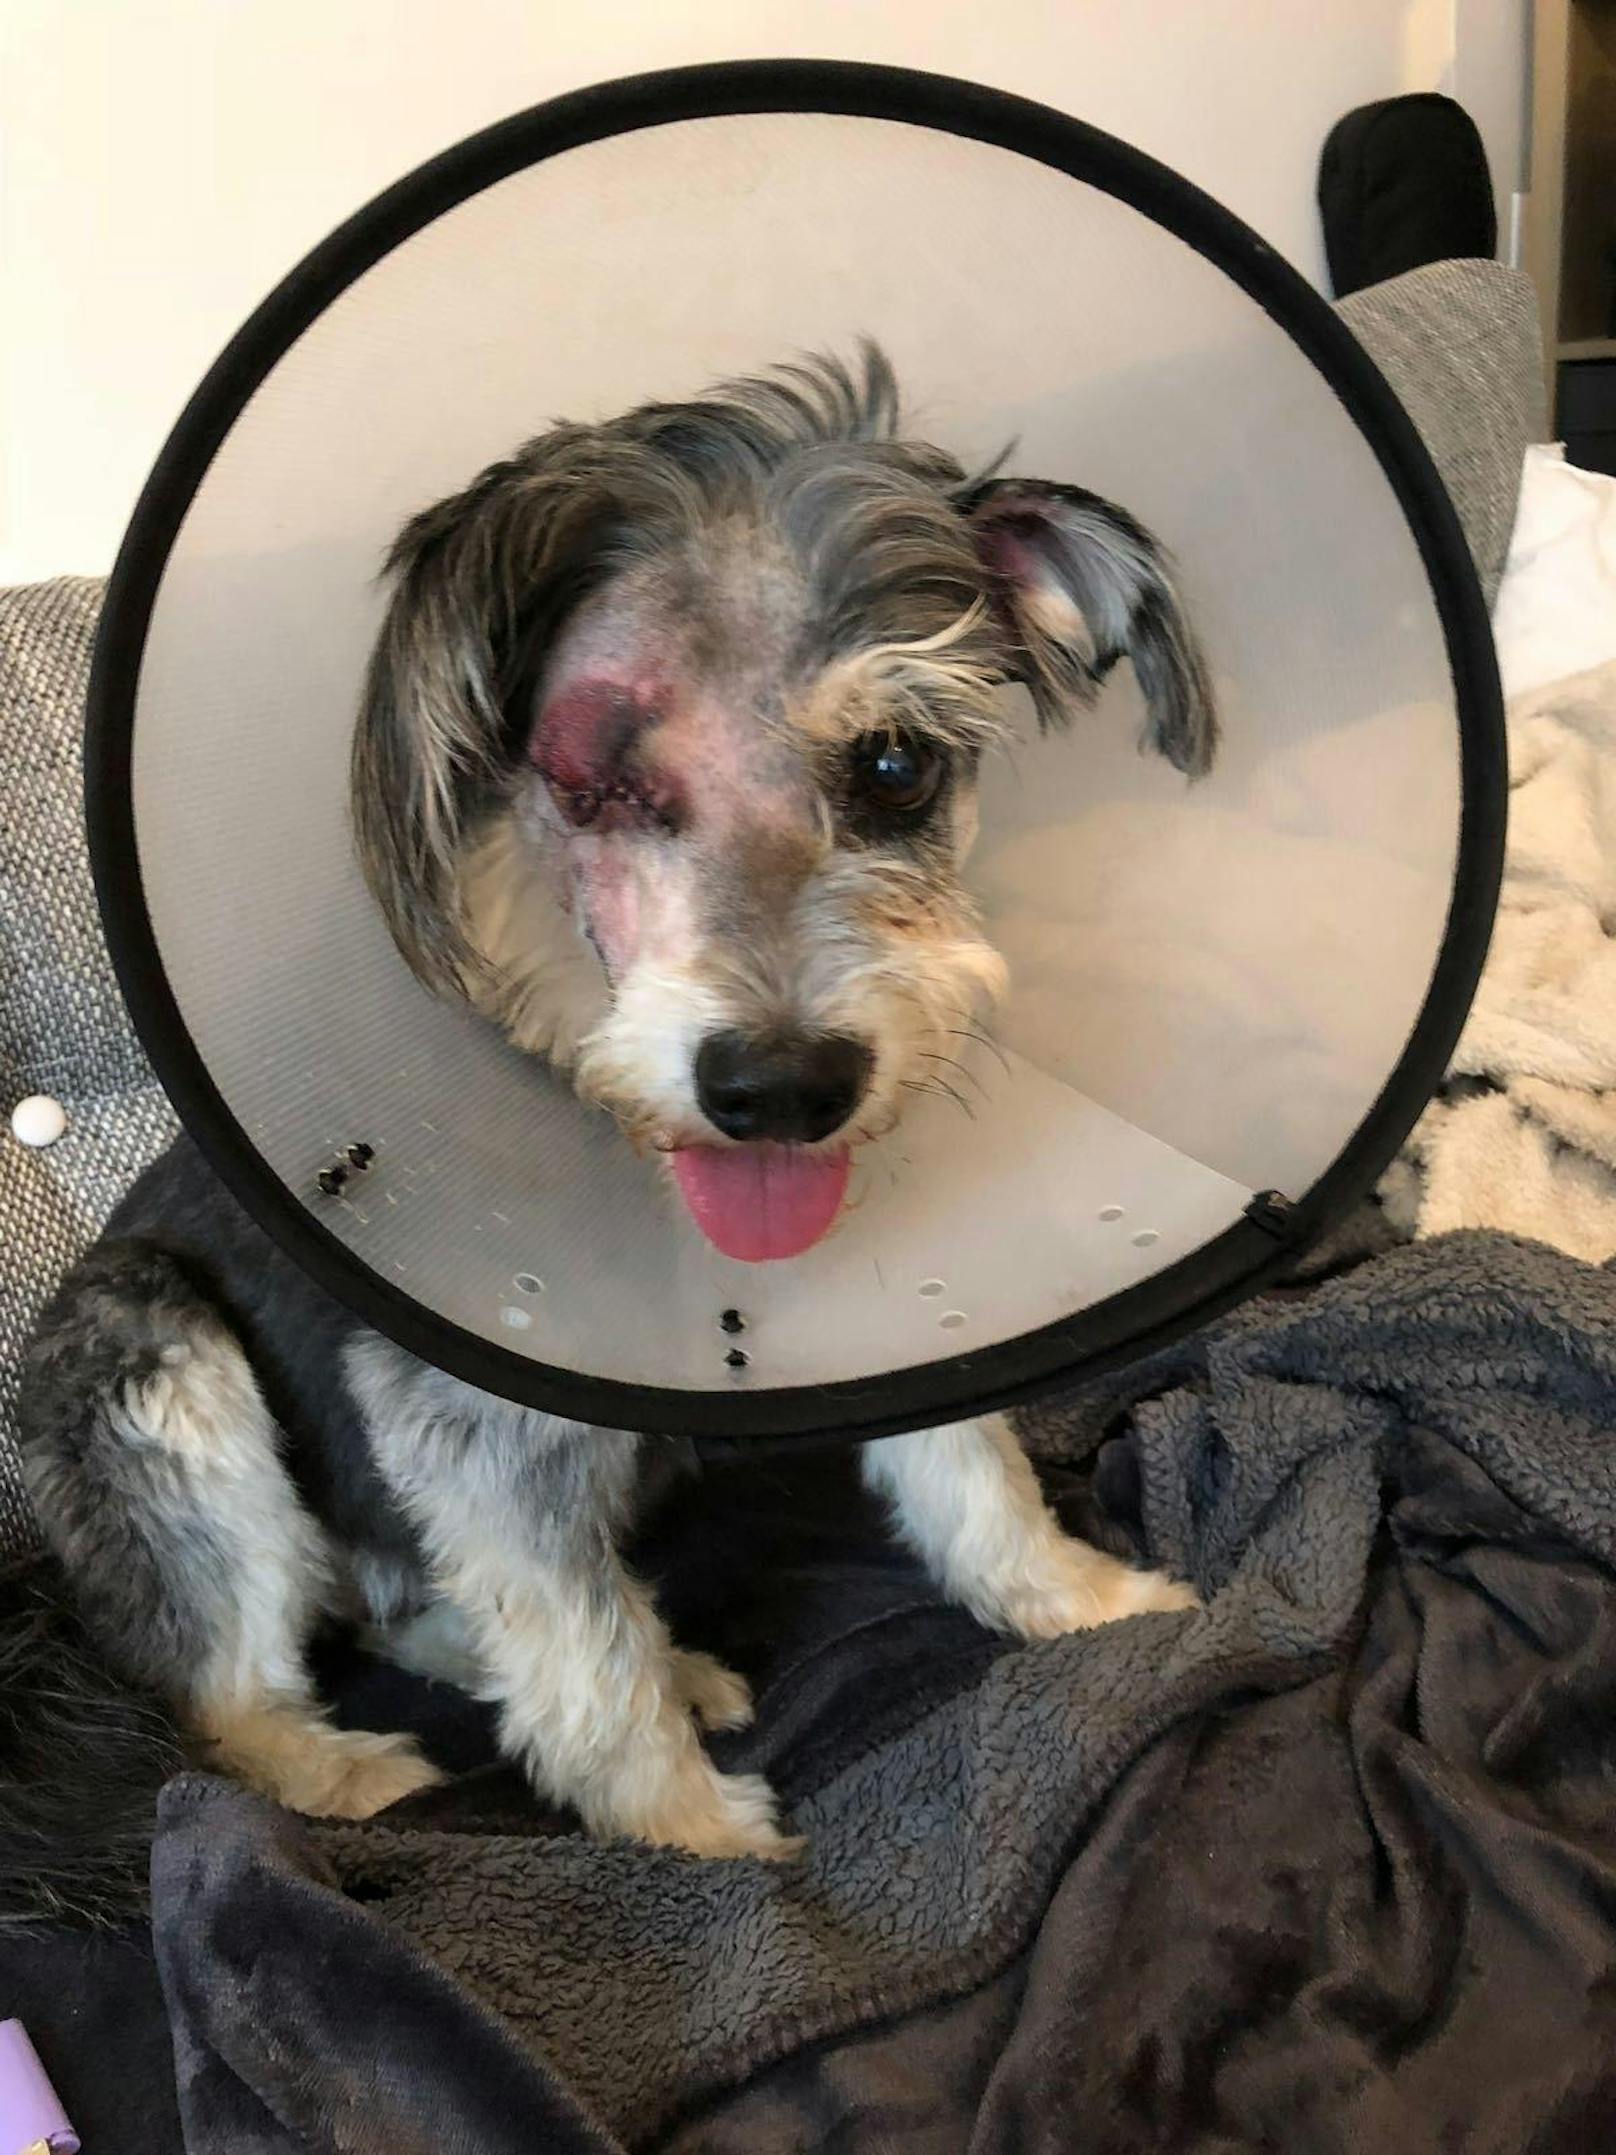 Der wuscheligen "Gina" musste das Auge amputiert werden. Ein fremder Hund war beim Gassigehen auf sie losgegangen.